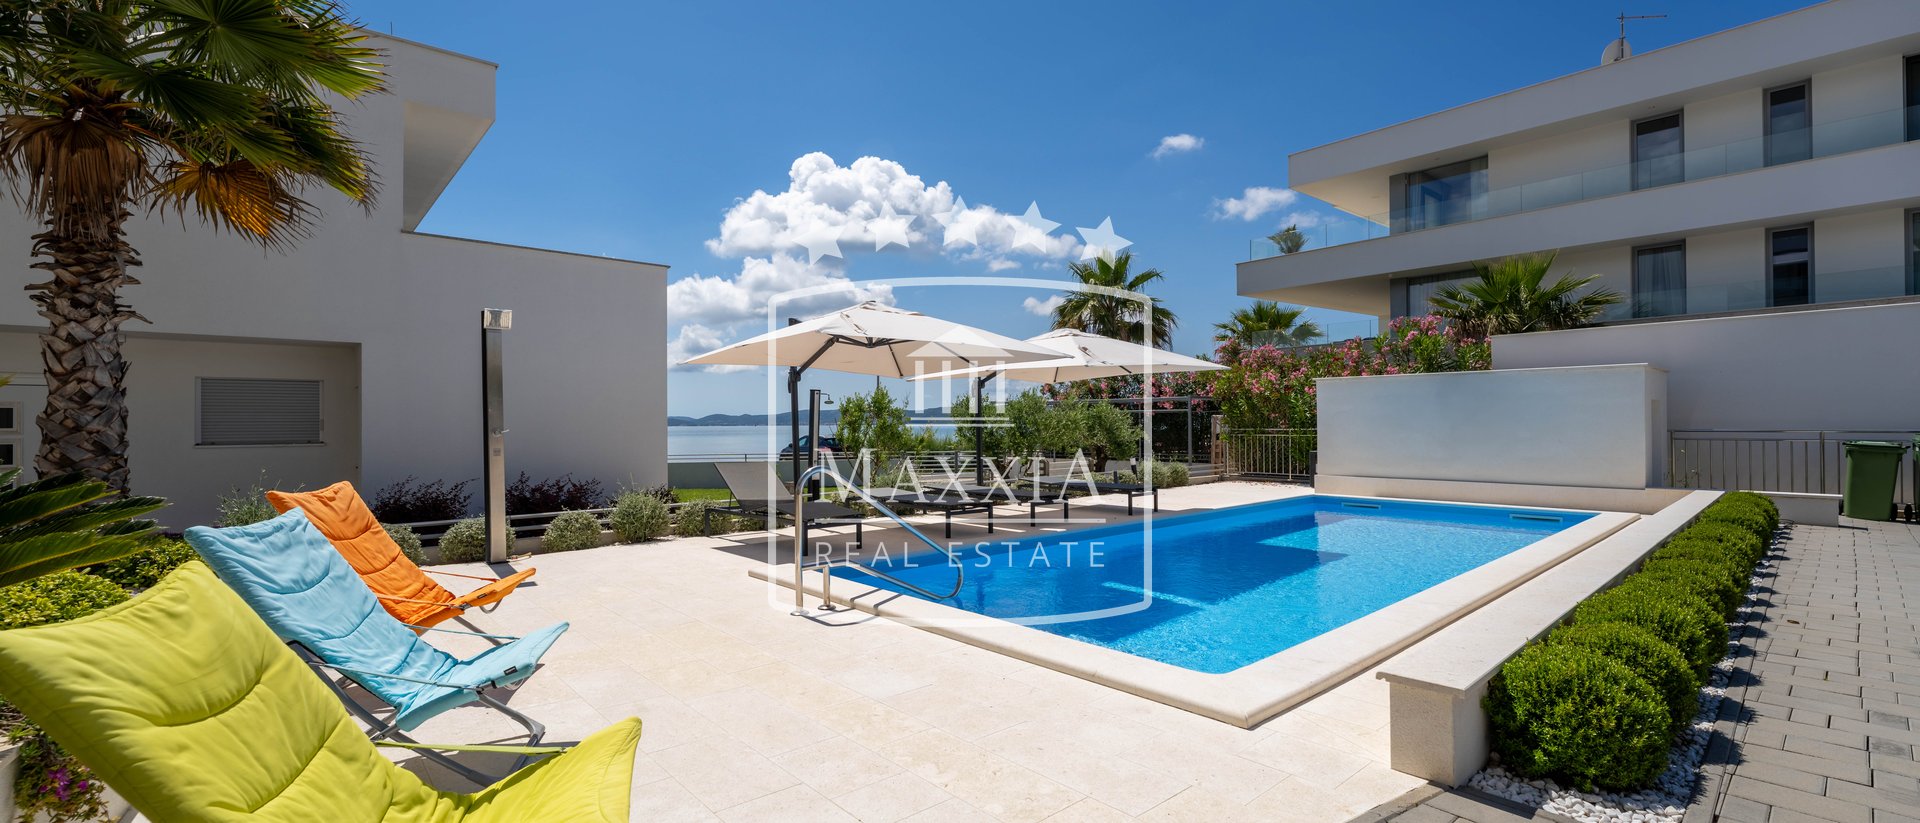 Sukošan - prestigeträchtige Villa am Meer 586m2 mit Pool! Exklusiv! 2 500 000 EUR